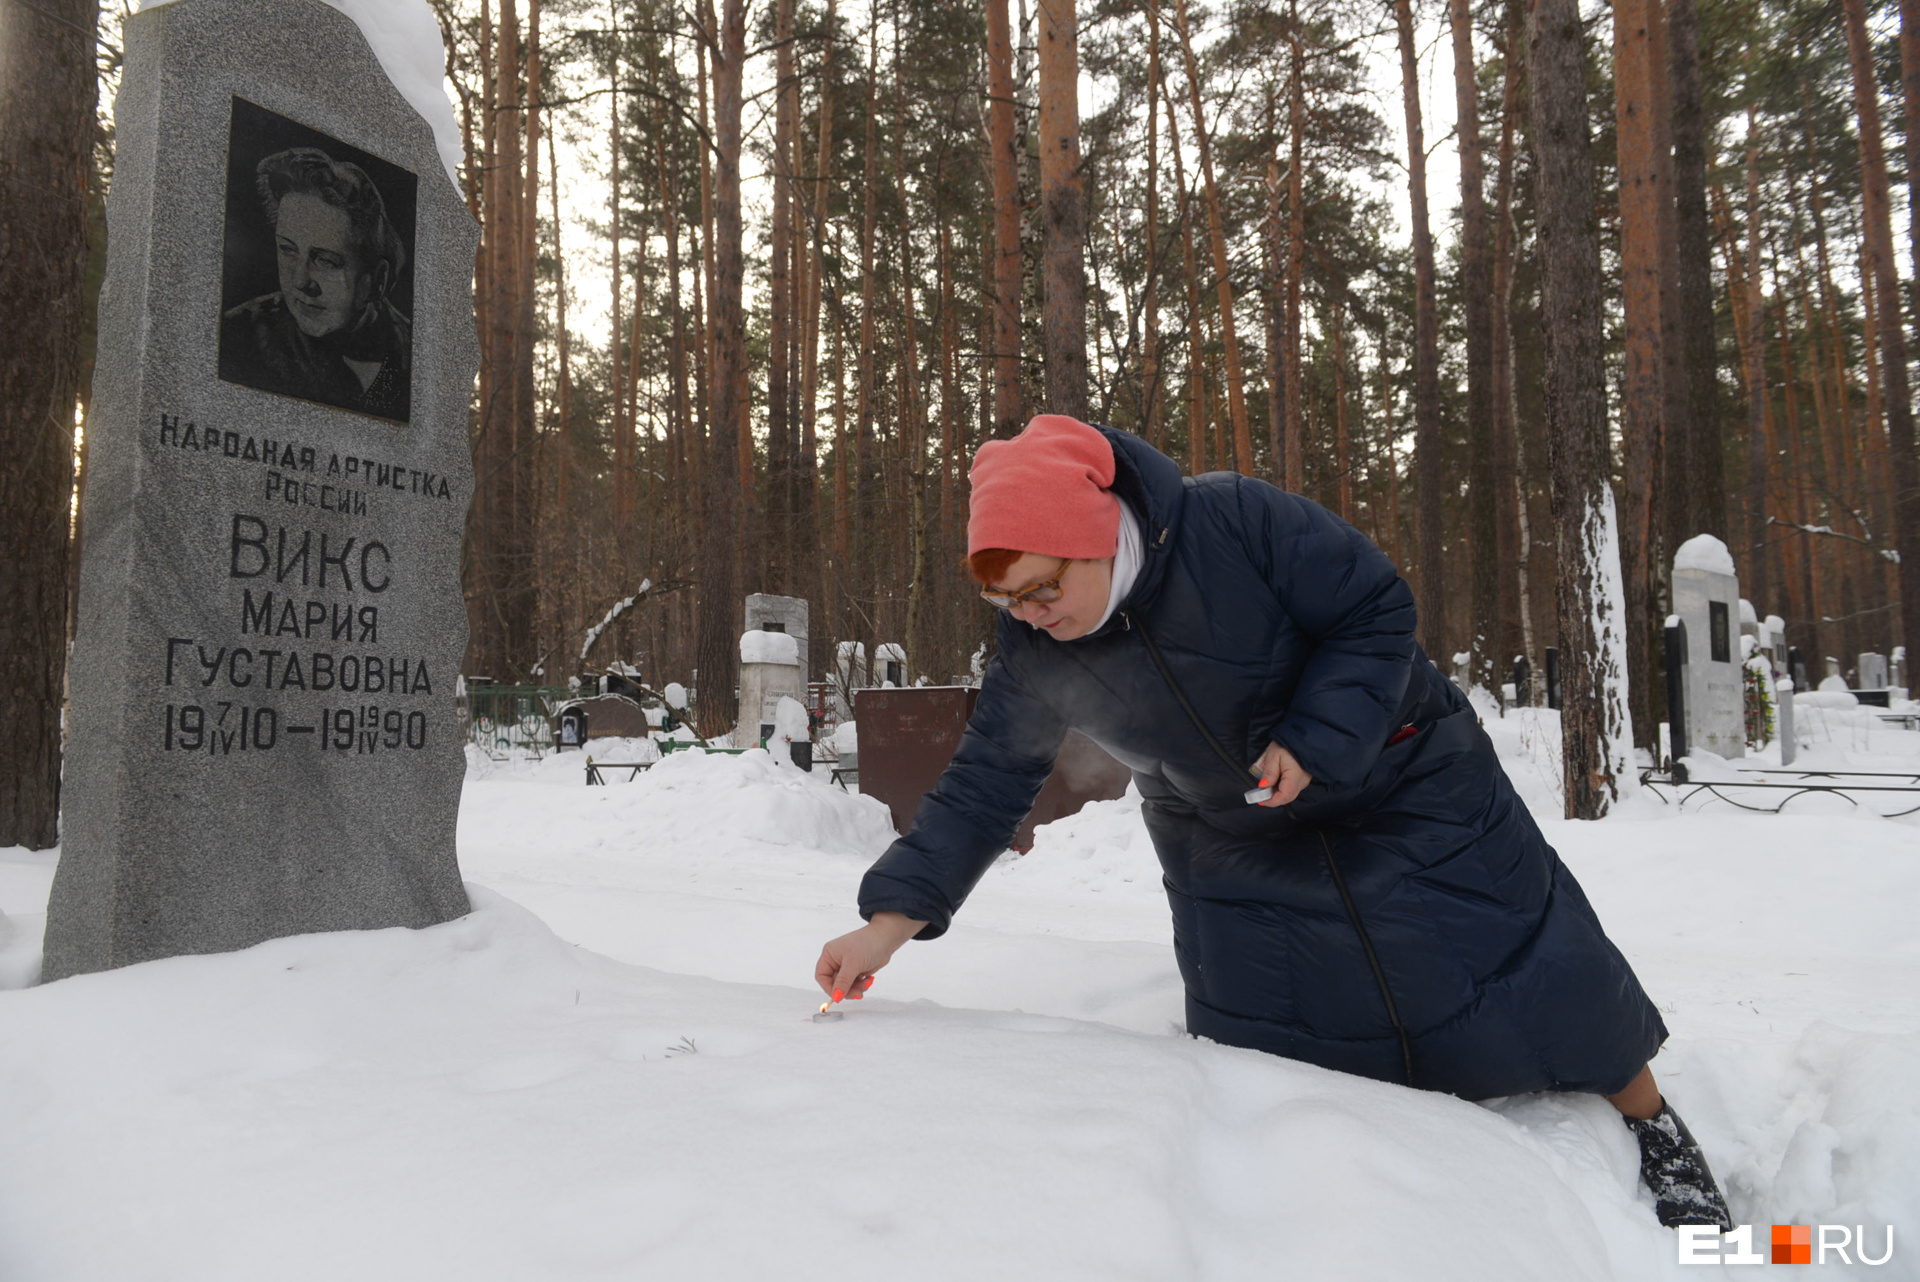 На могиле Марии Викс мы с экскурсоводом Татьяной Мосуновой зажгли свечу — в знак уважения